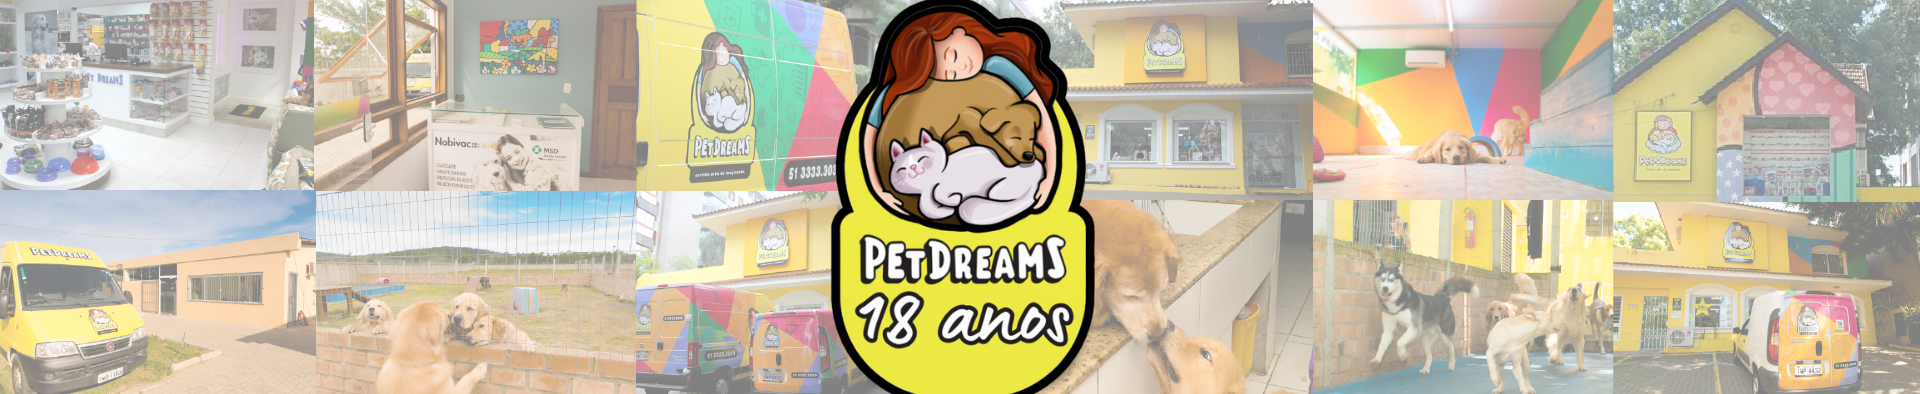 PET DREAMS 17 ANOS